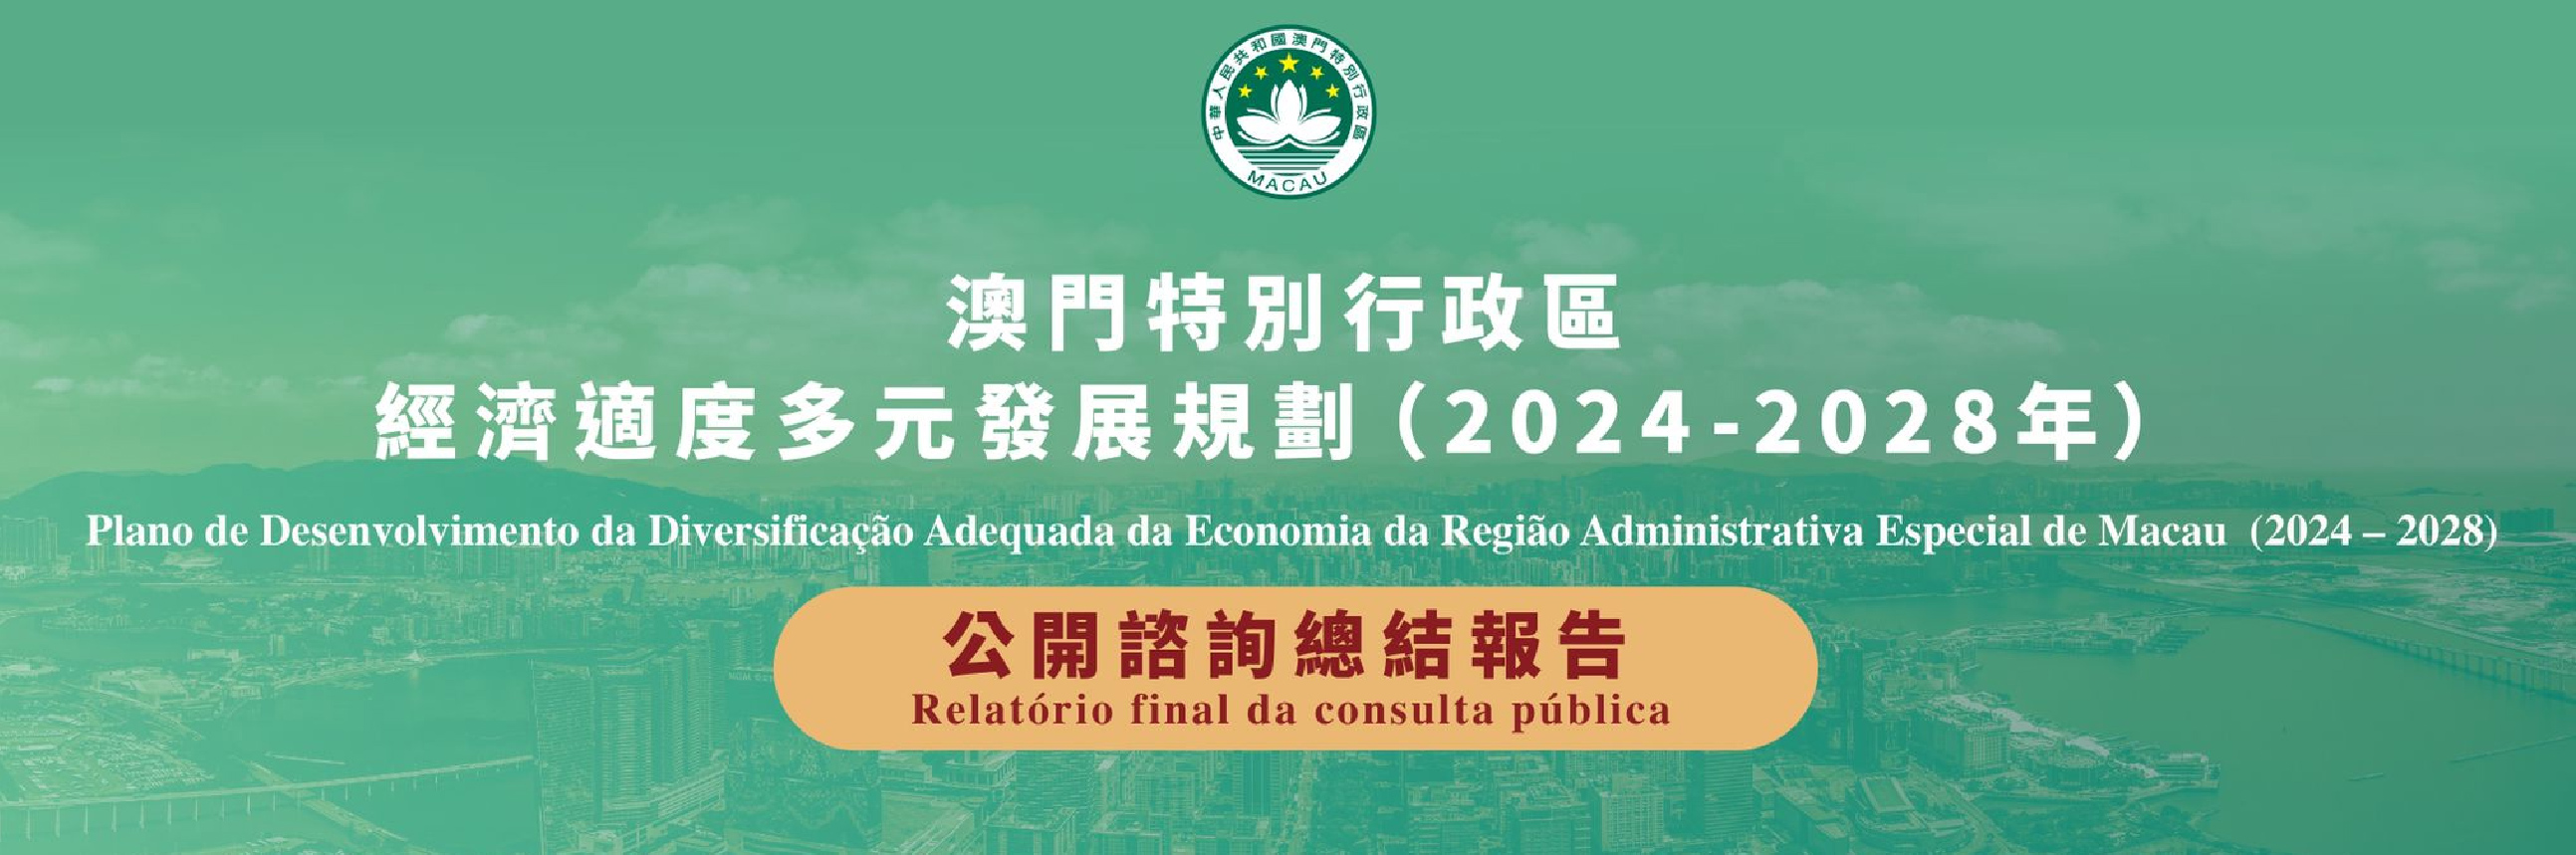 經濟適度多元發展規劃公開諮詢總結報告 (2024 - 2028)